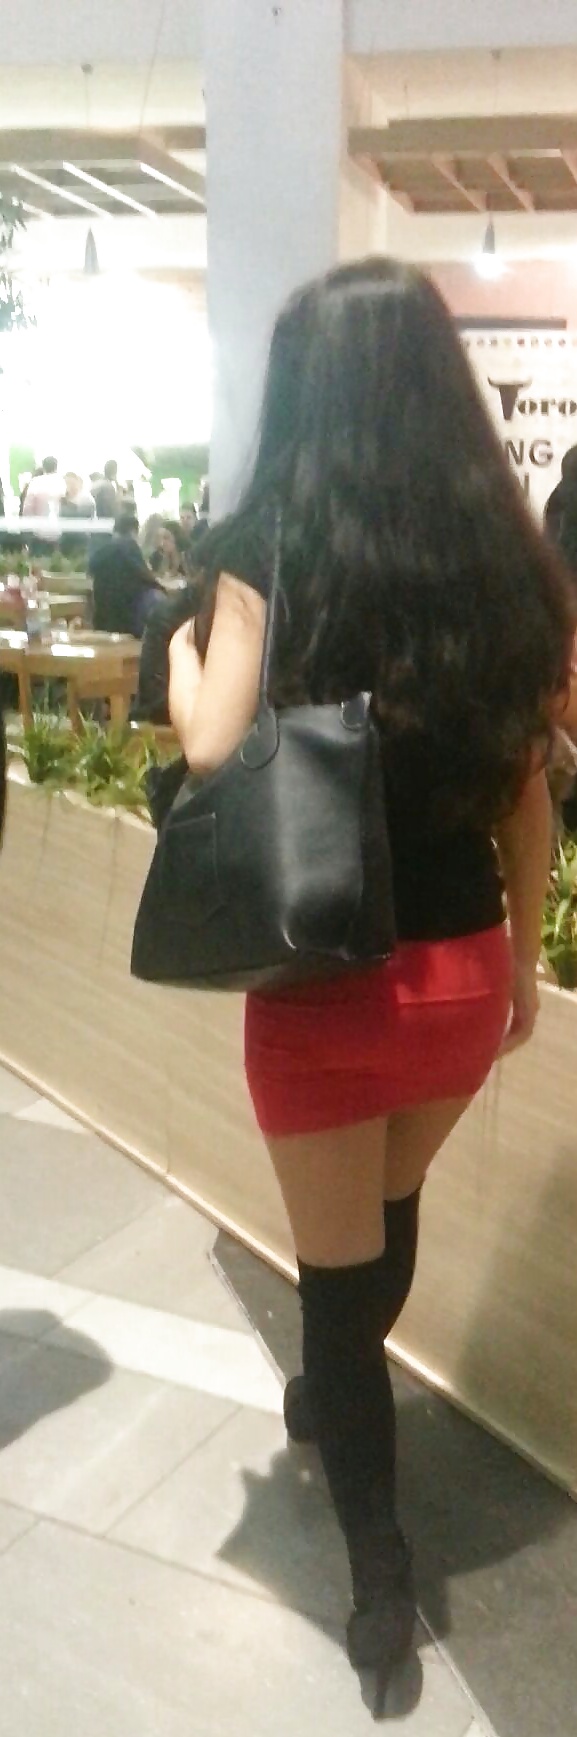 Spy mini falda sexy jóvenes en el centro comercial rumano
 #39540202